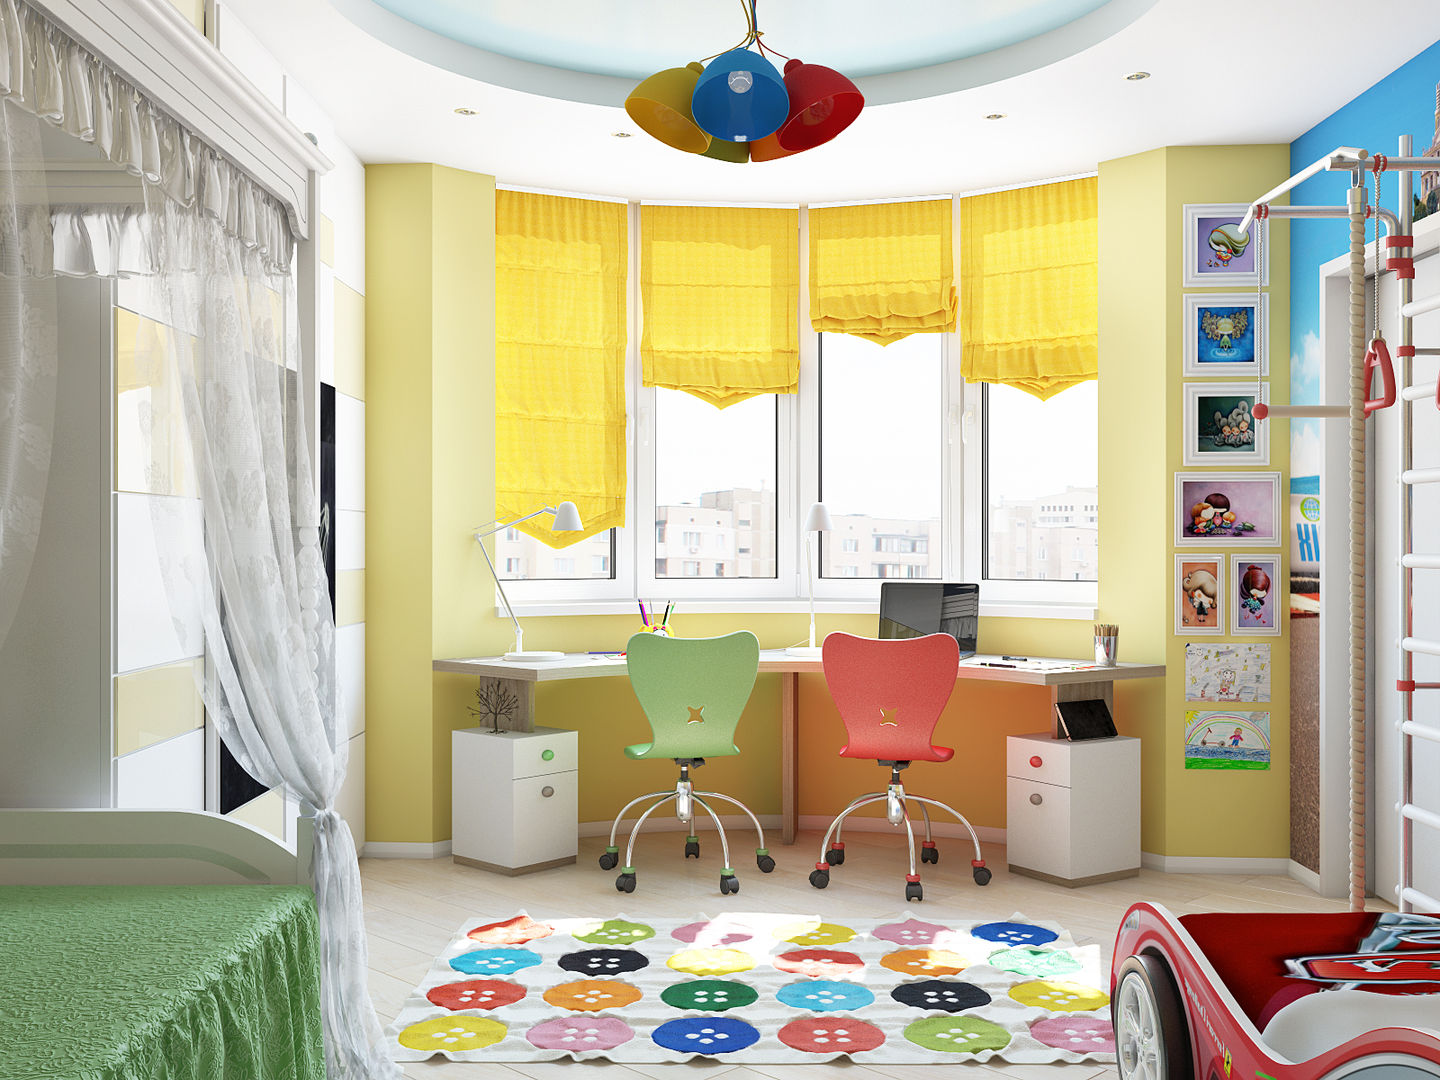 Минималистичный интерьер с яркой детской, Tatiana Zaitseva Design Studio Tatiana Zaitseva Design Studio Nursery/kid’s room